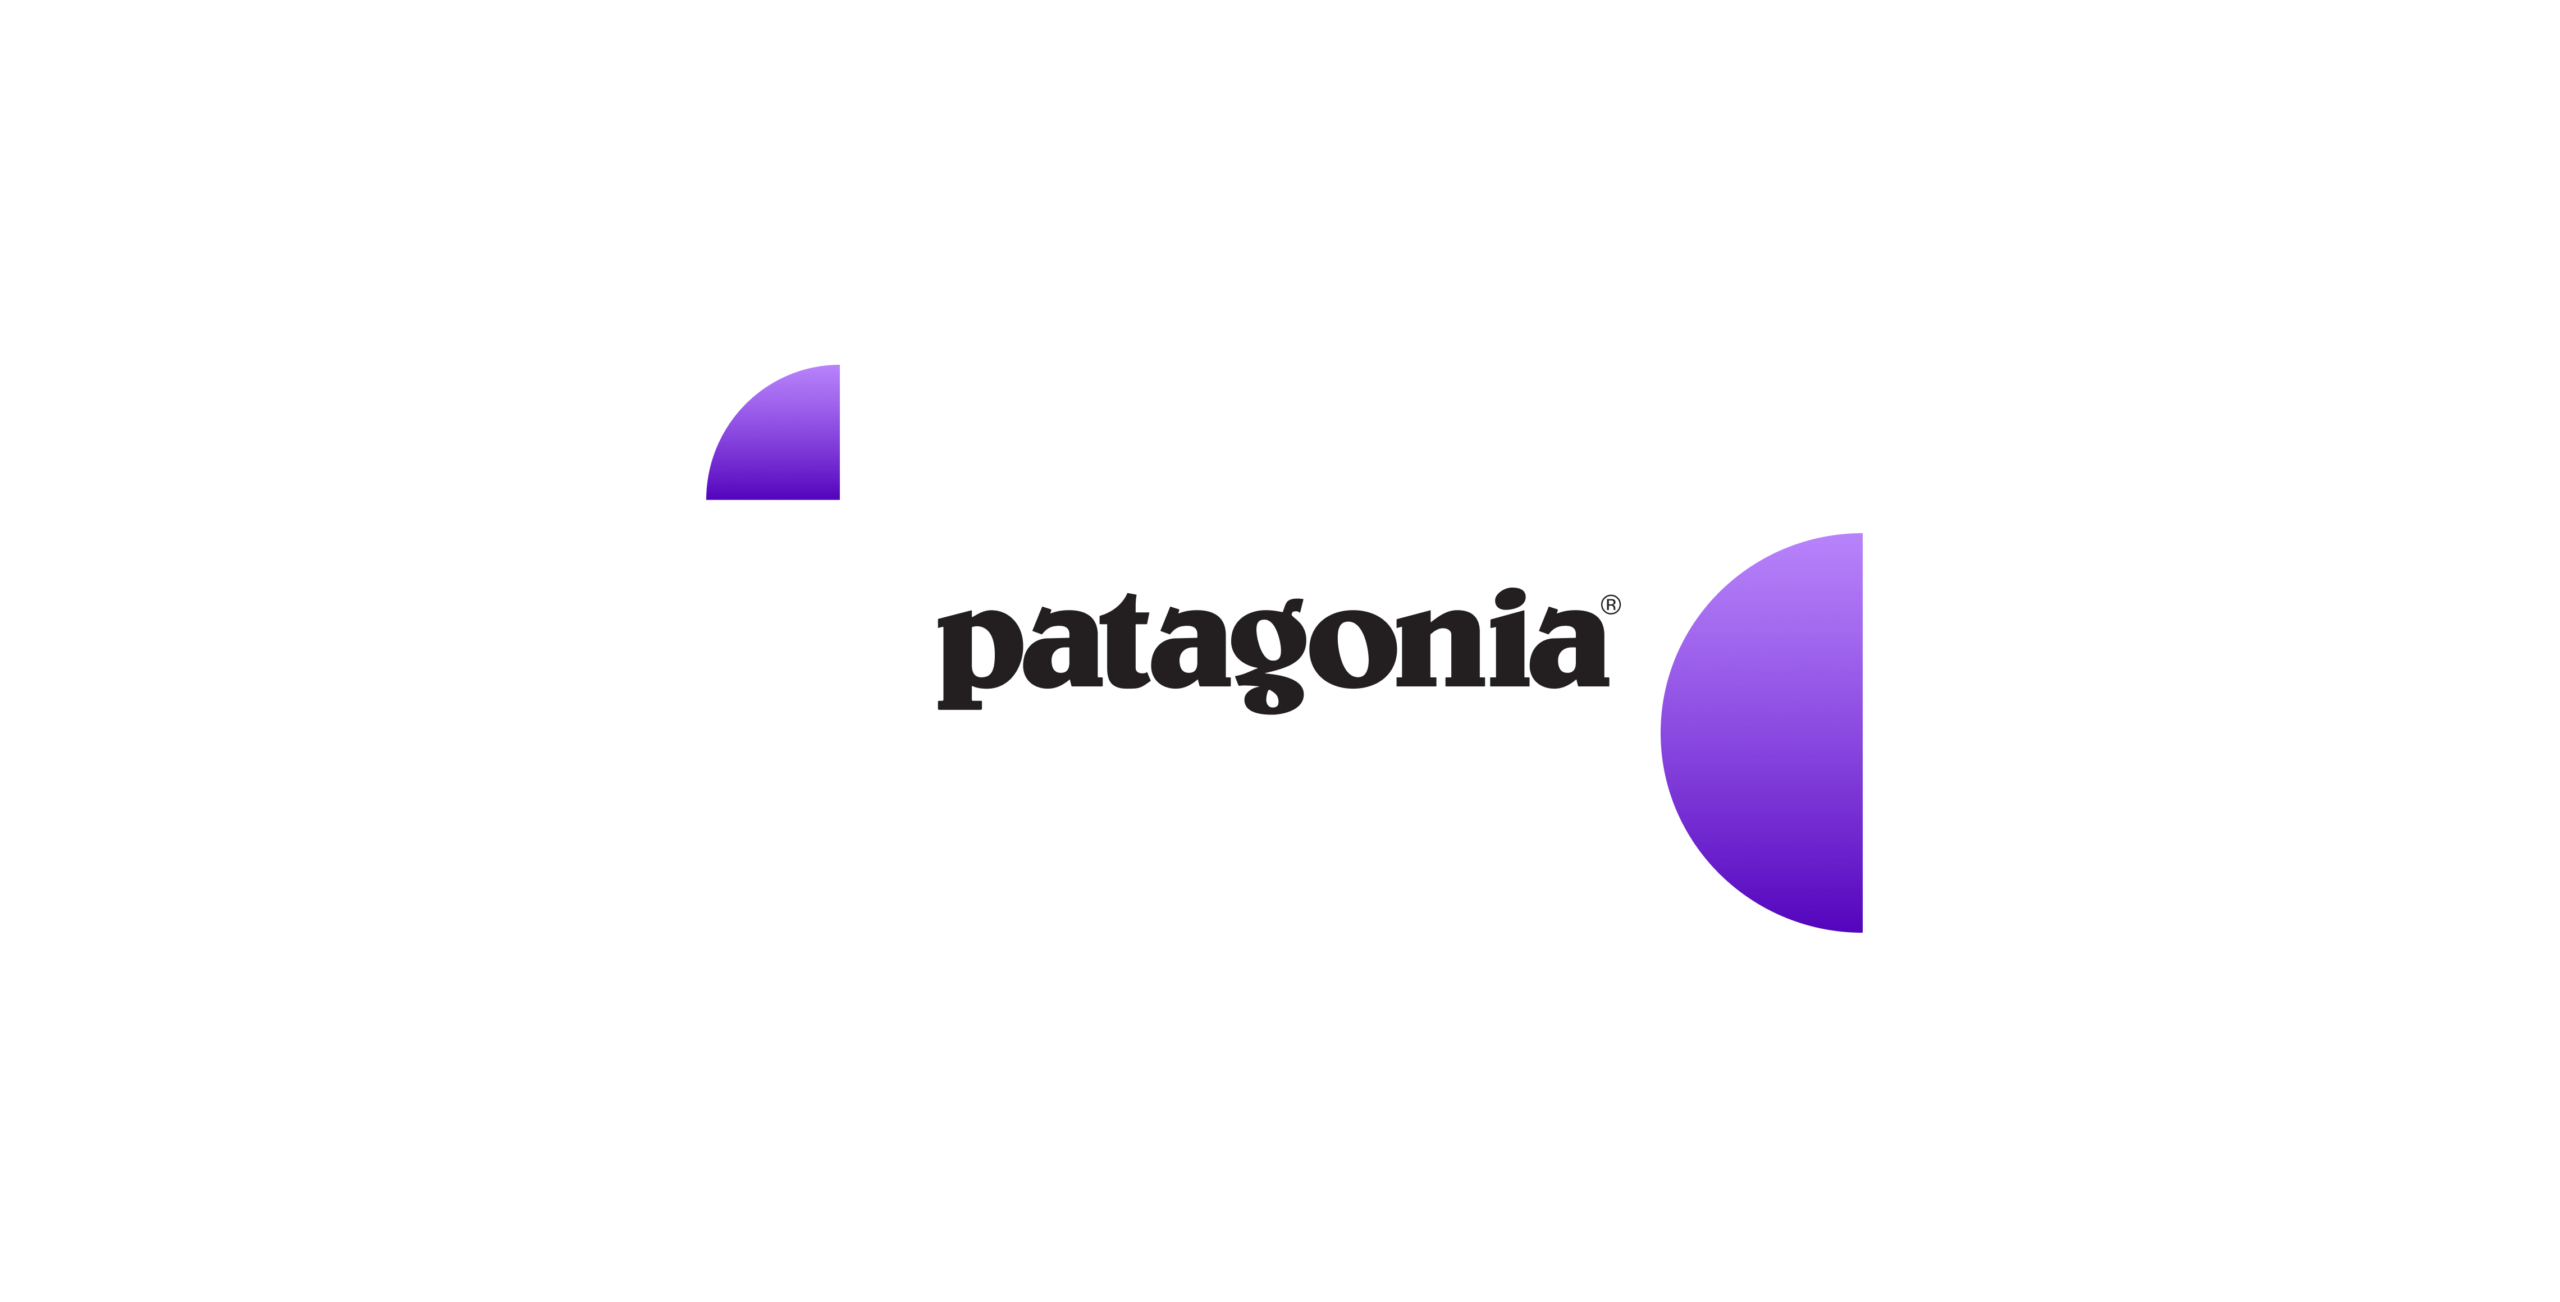 Patagonia Logo Winner